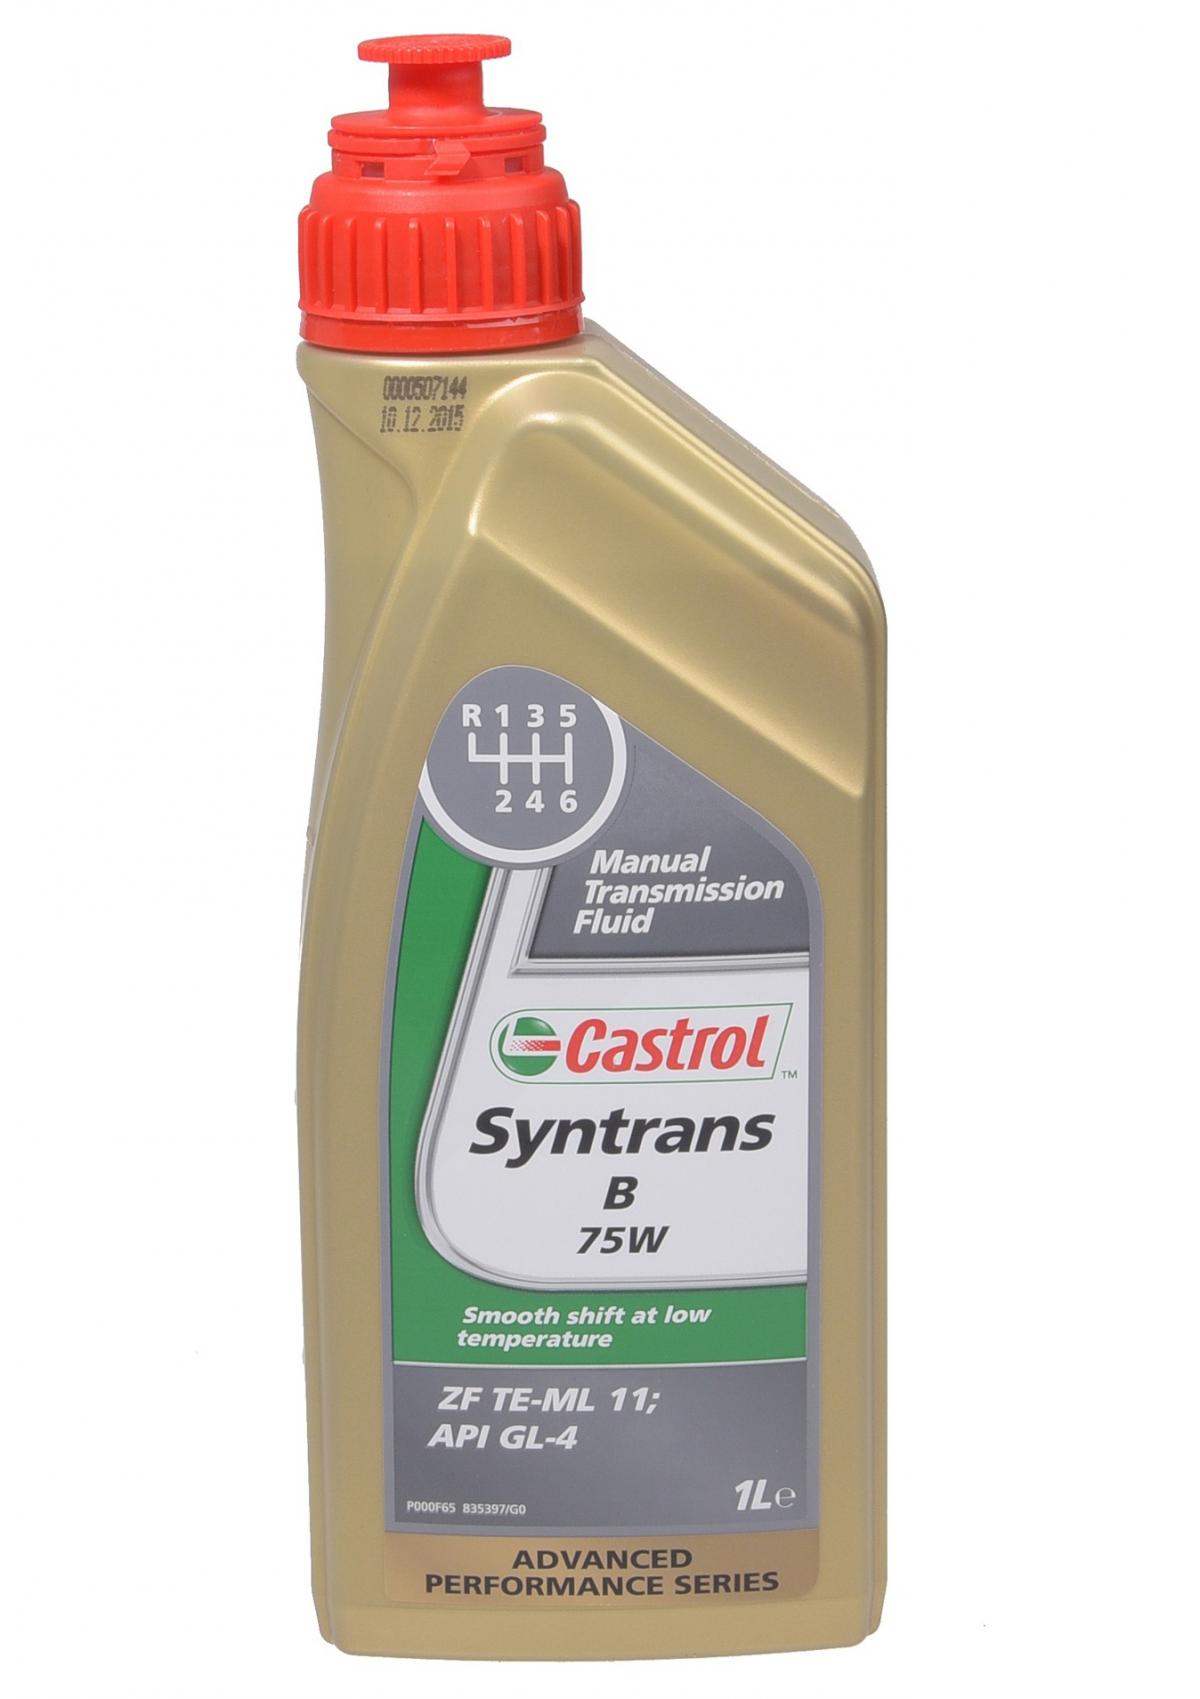 Масло castrol 75w90. Трансмиссионное масло Castrol Syntrans b 75w 1 л. Кастрол 75w90 трансмиссионное масло. Castrol Syntrans b 75w артикул. Castrol Syntrans Transaxle 75w-90 артикул.